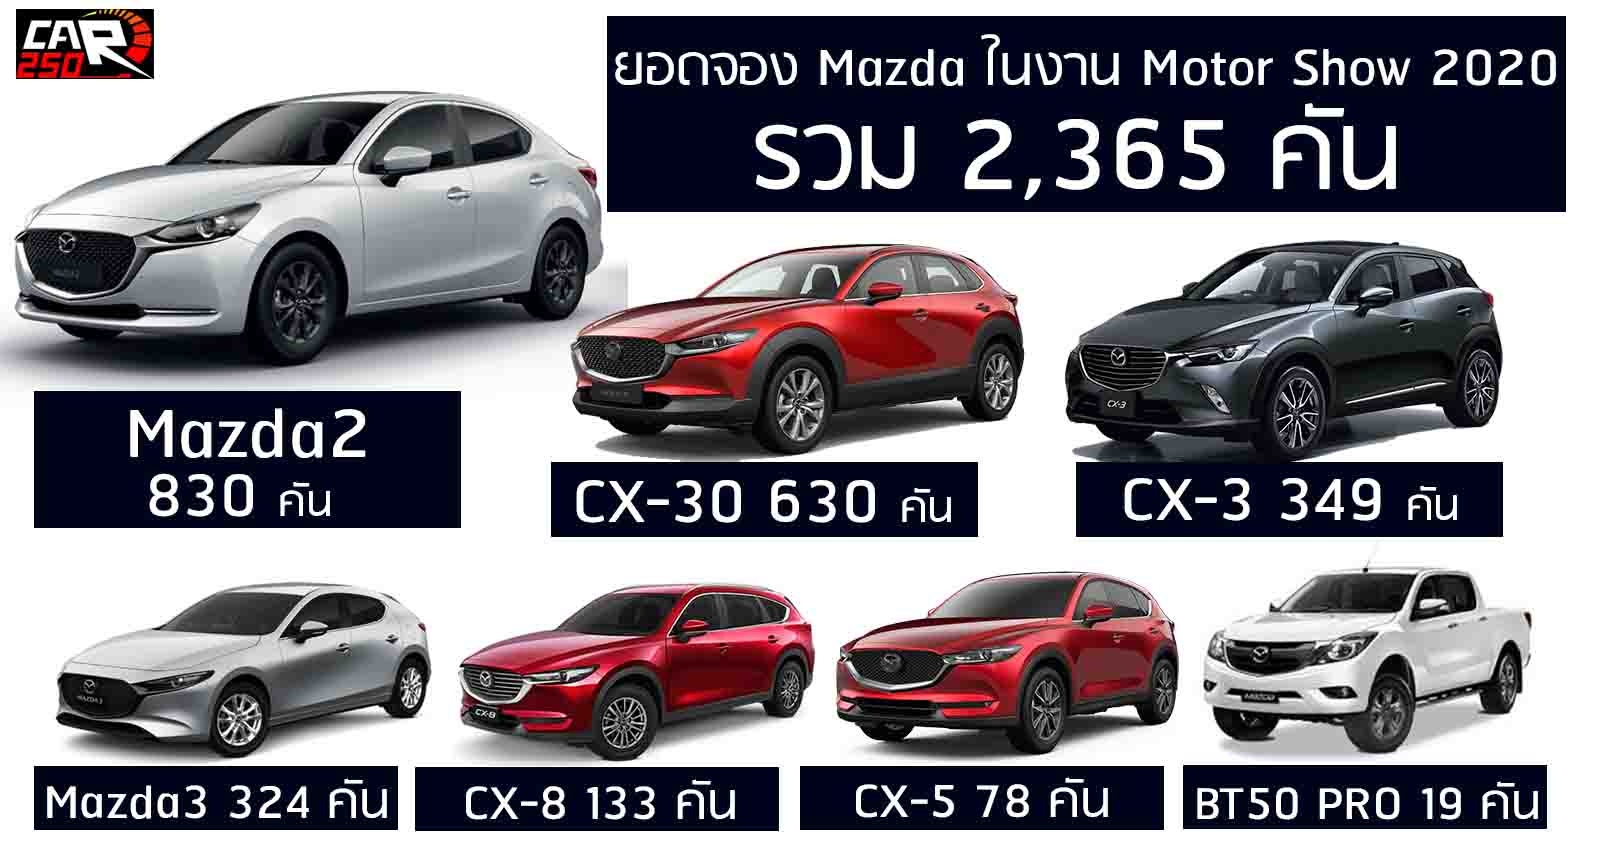 Mazda เผยยอดจอง 2,365 คัน ในงาน Motor Show 2020